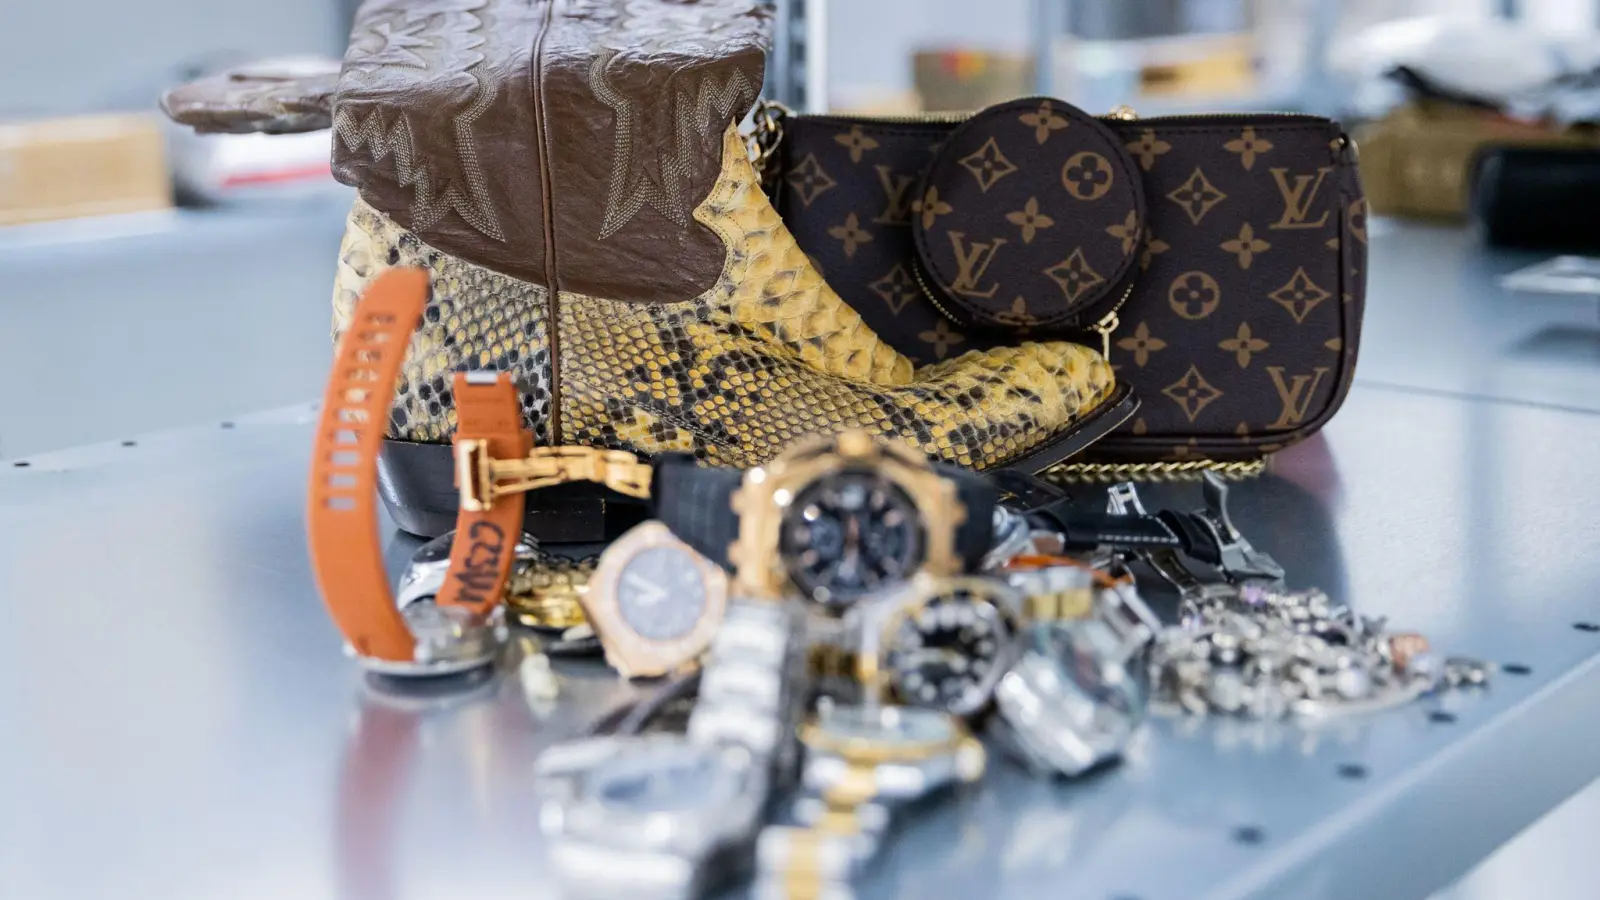 Gefälschte Markenuhren, Pythonschlangen-Stiefel und eine gefälschte Luxustasche im Hauptzollamt Köln. (Foto: Rolf Vennenbernd/dpa)